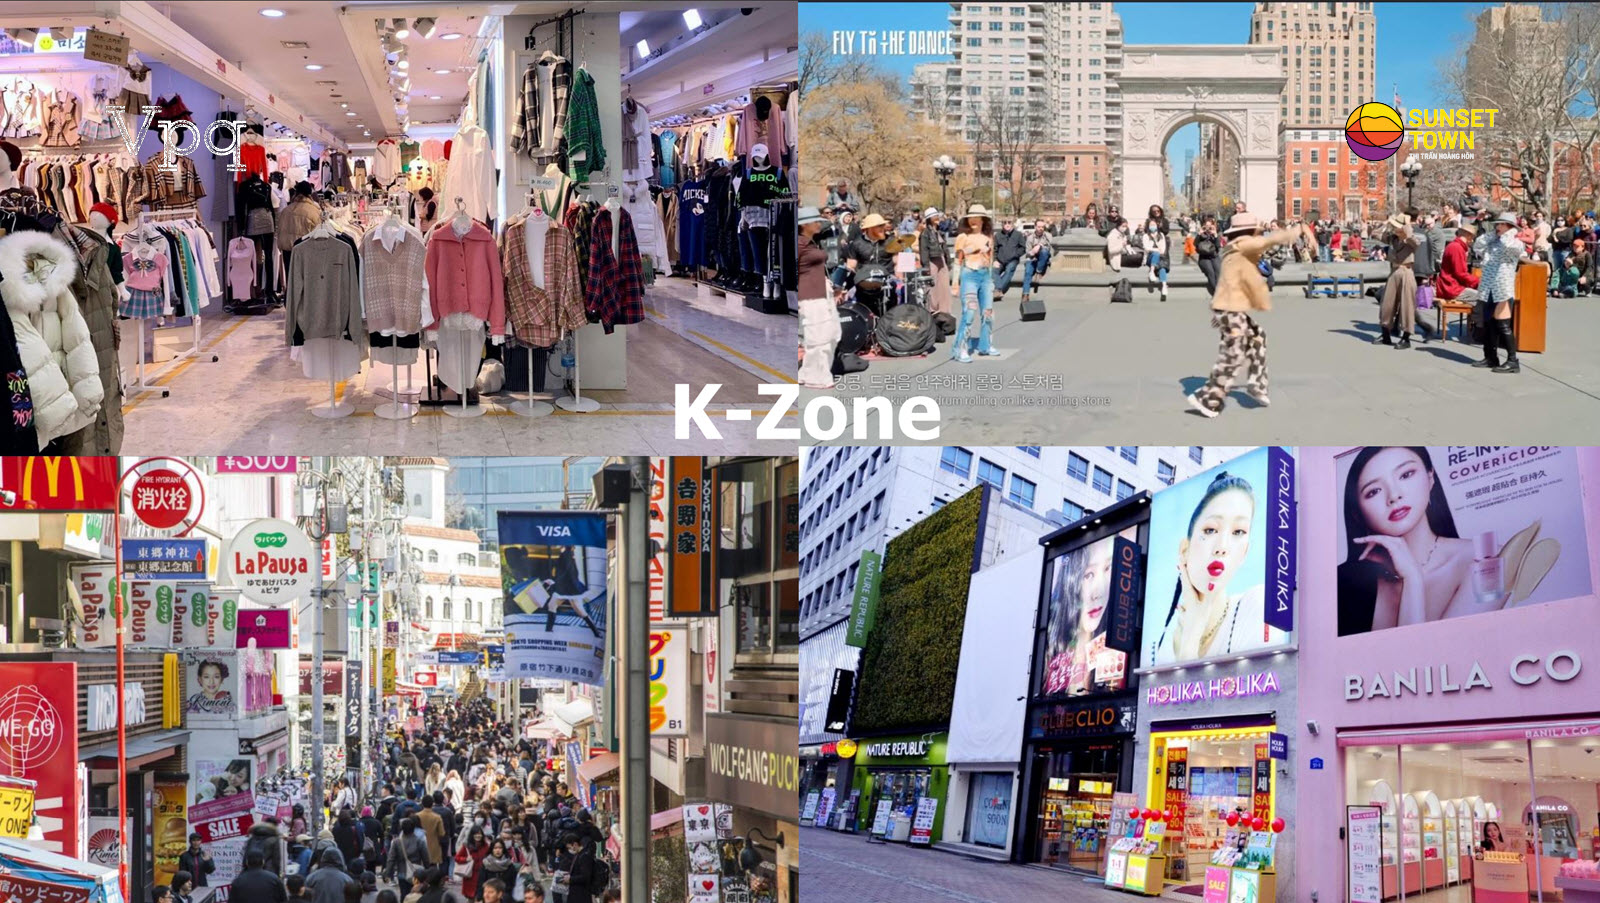 Khu vực dịch vụ Shopping là làm đẹp tại K-Zone